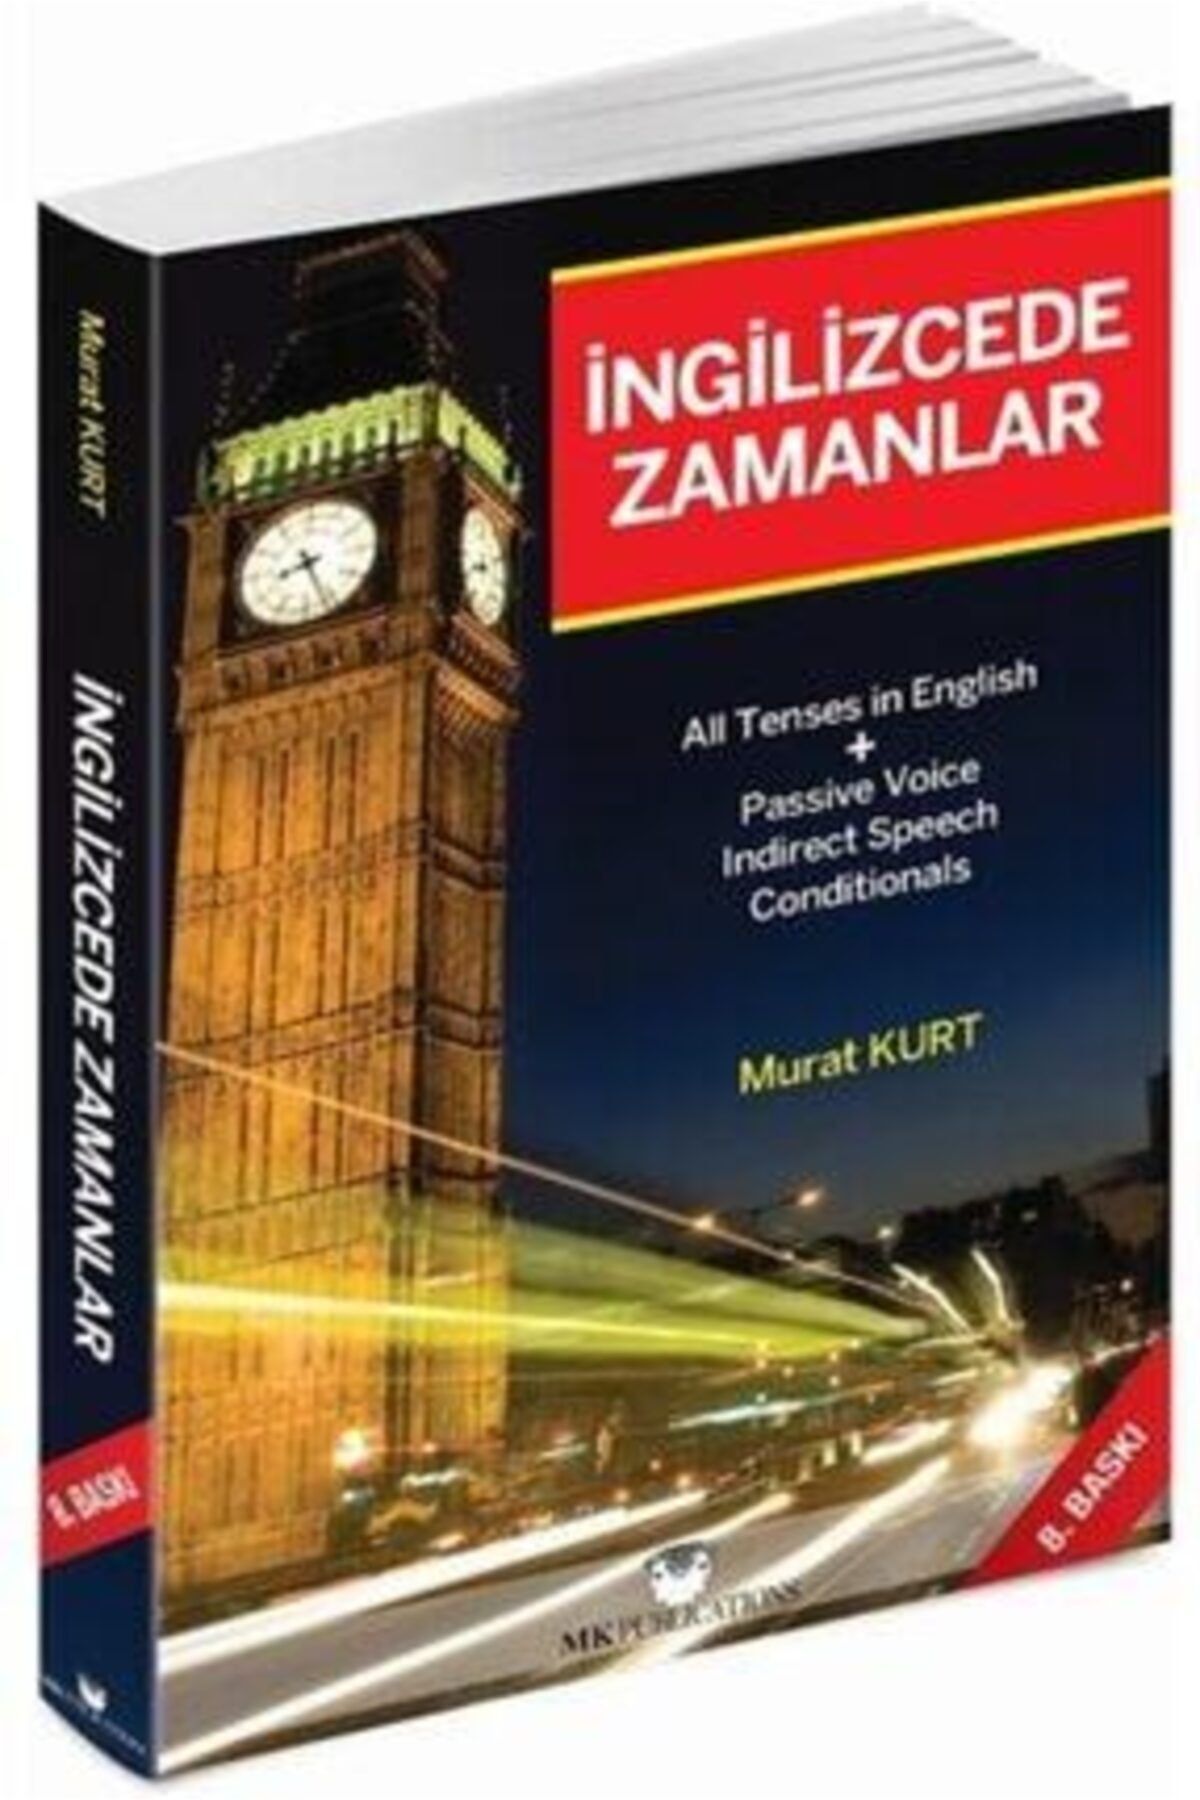 MK Publications Ingilizcede Zamanlar - Murat Kurt Türkçe Açıkamalı - 496 Sayfa